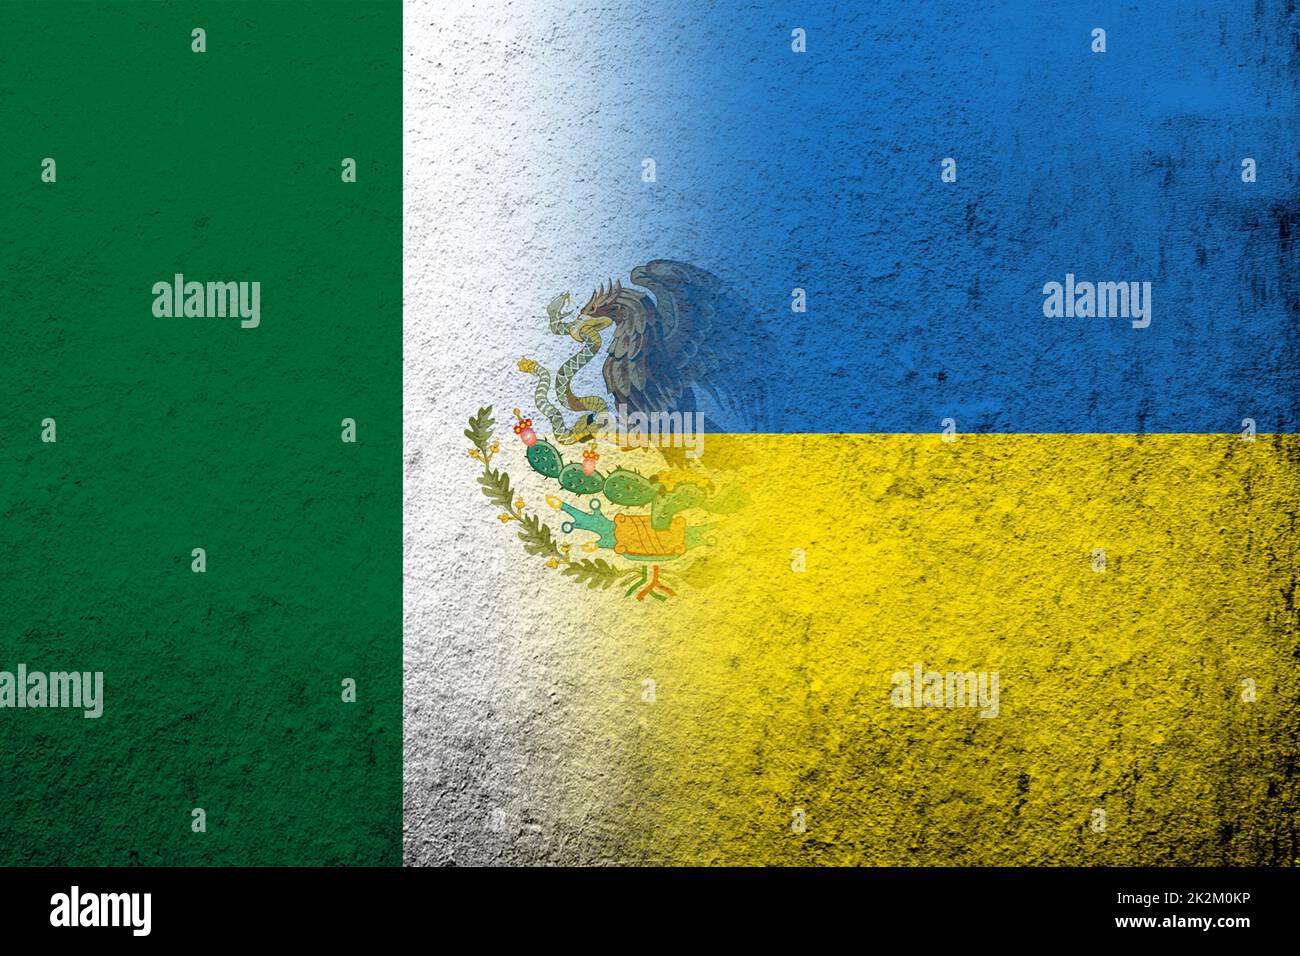 Die Nationalflagge der Vereinigten Mexikanischen Staaten mit der Nationalflagge der Ukraine. Grungen Hintergrund Stockfoto